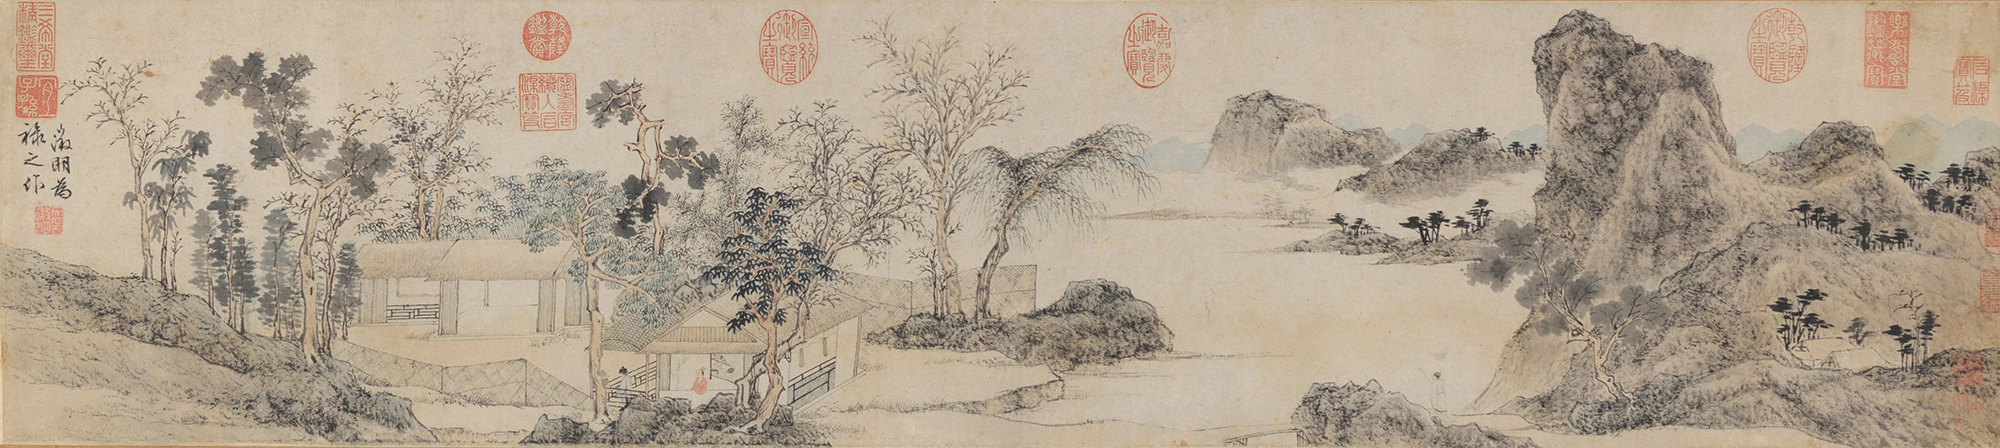 林榭煎茶图卷 天津博物馆藏 文徵明 明 25.7×114.9cm 纸本设色